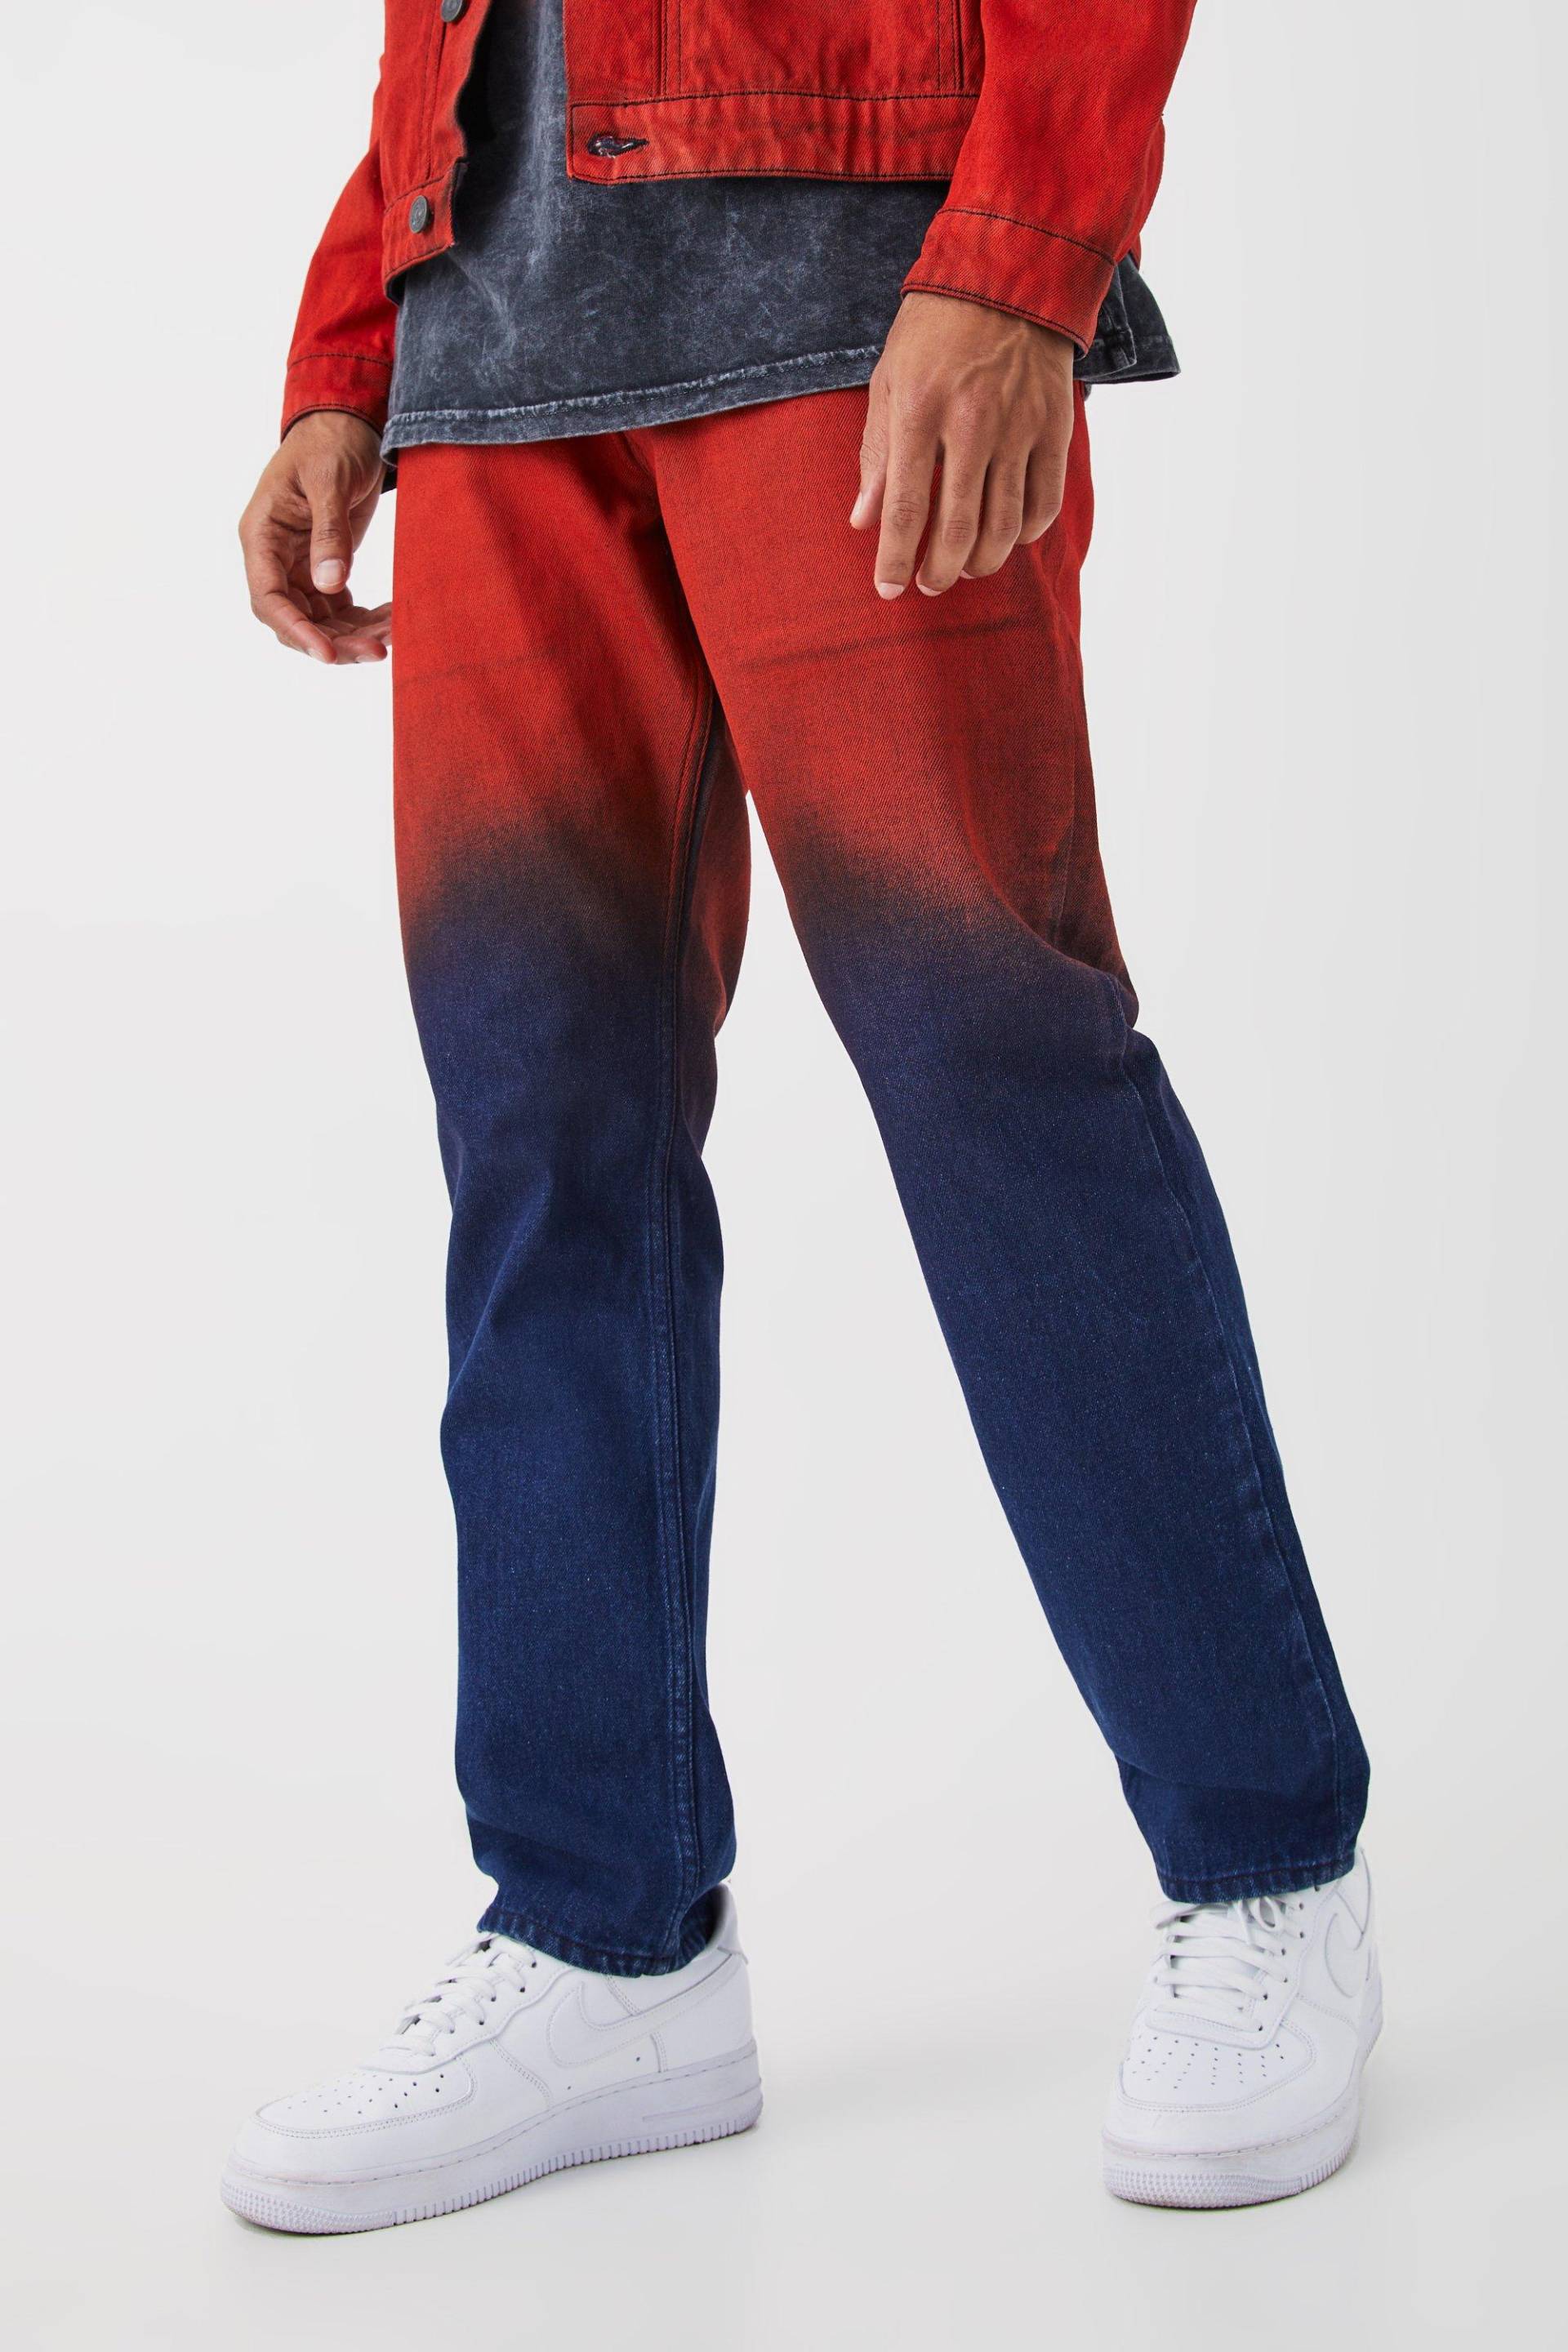 Mens Gerade Jeans mit Farbverlauf - Rot - 34R, Rot von boohooman